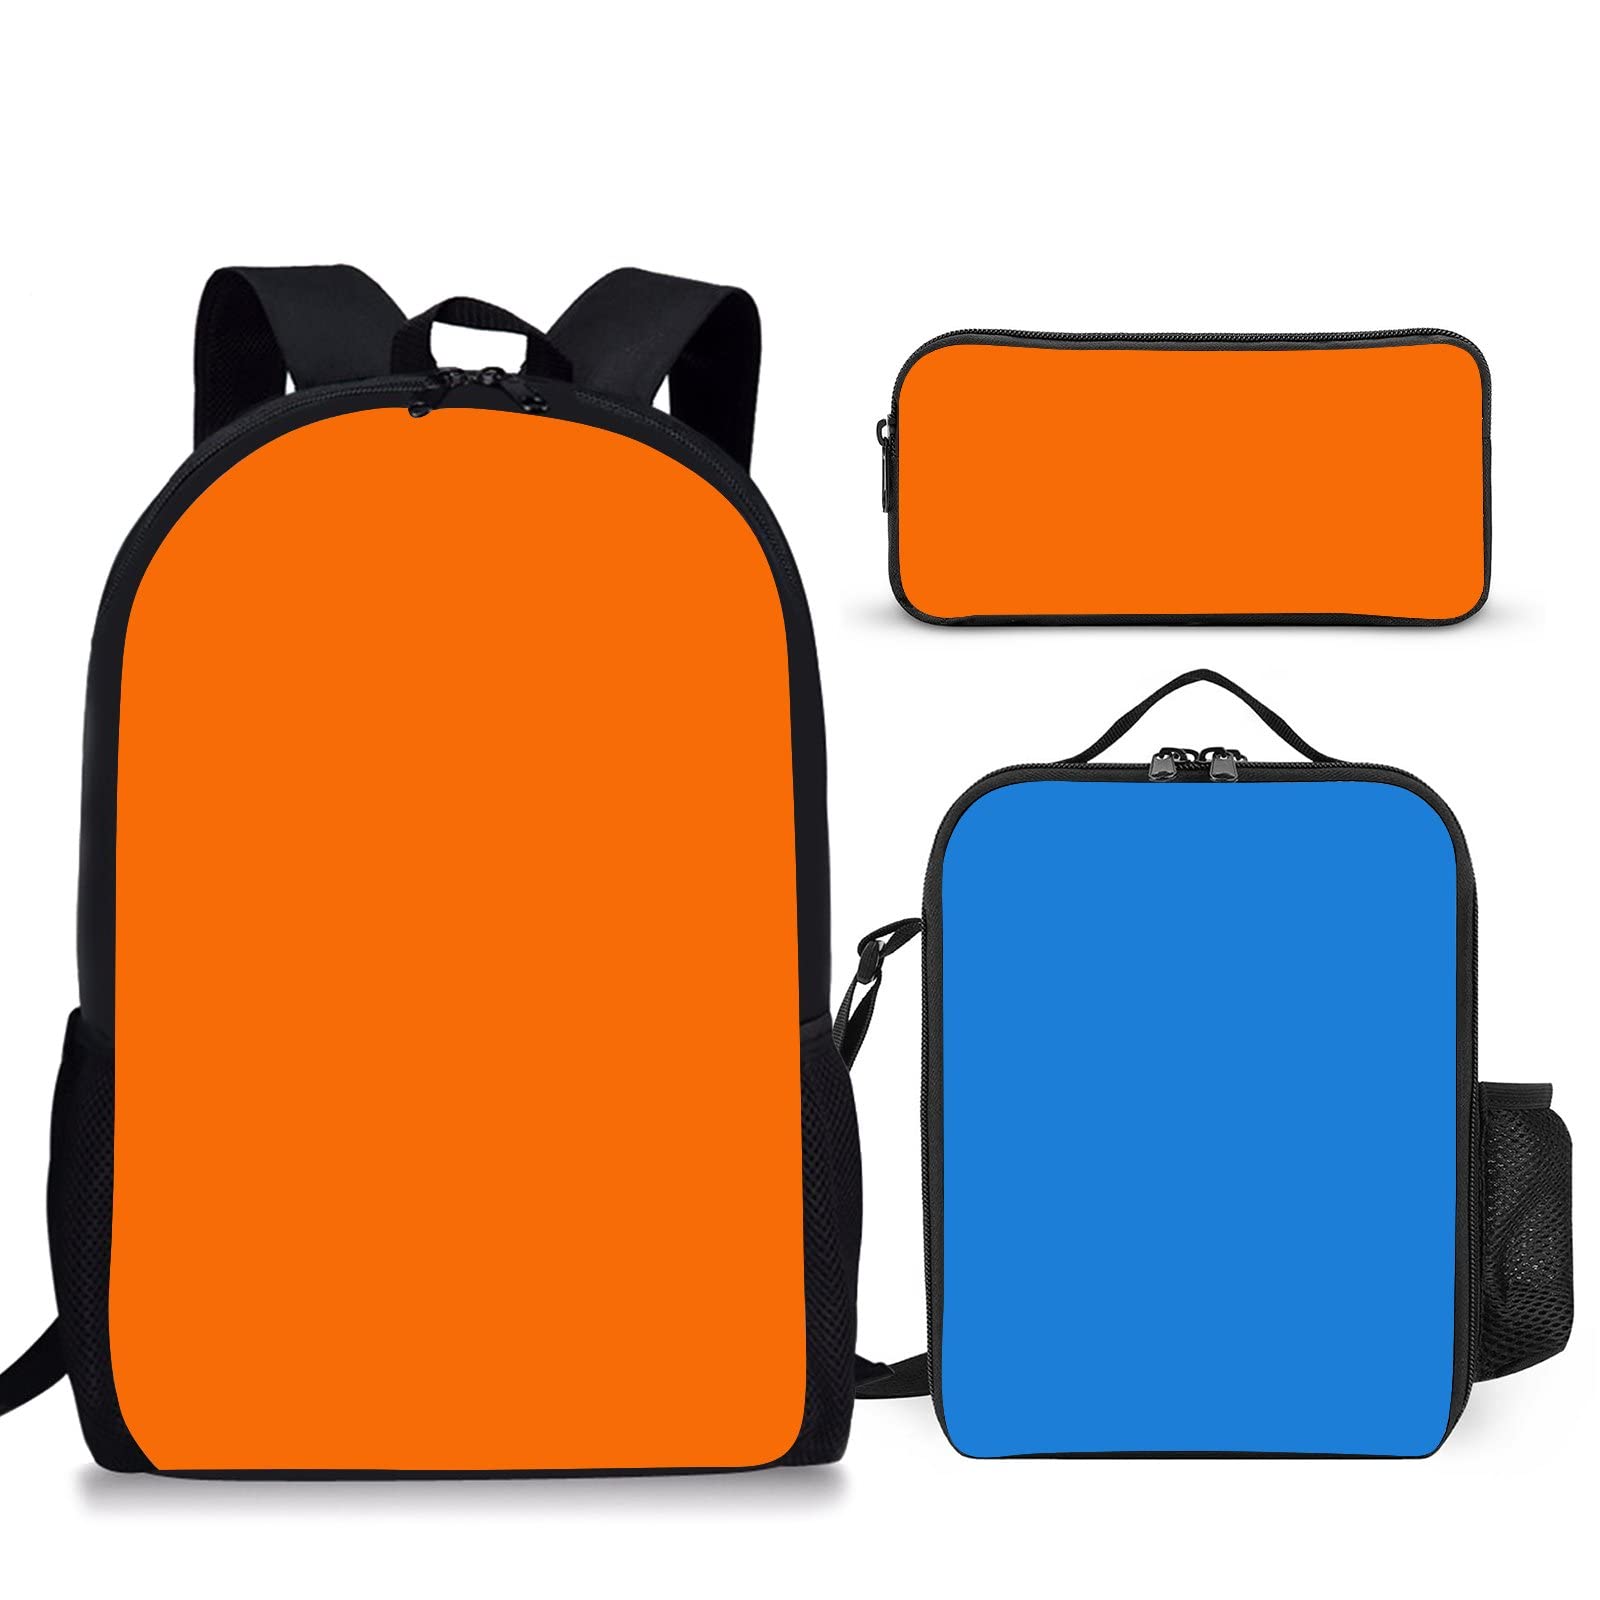 送料無料Papeno 3PCS Cartoon Bookbag Set with Lunch Bag Lightweight Backpack Multifunction 3-in-1 Travel Bag Set for Boy